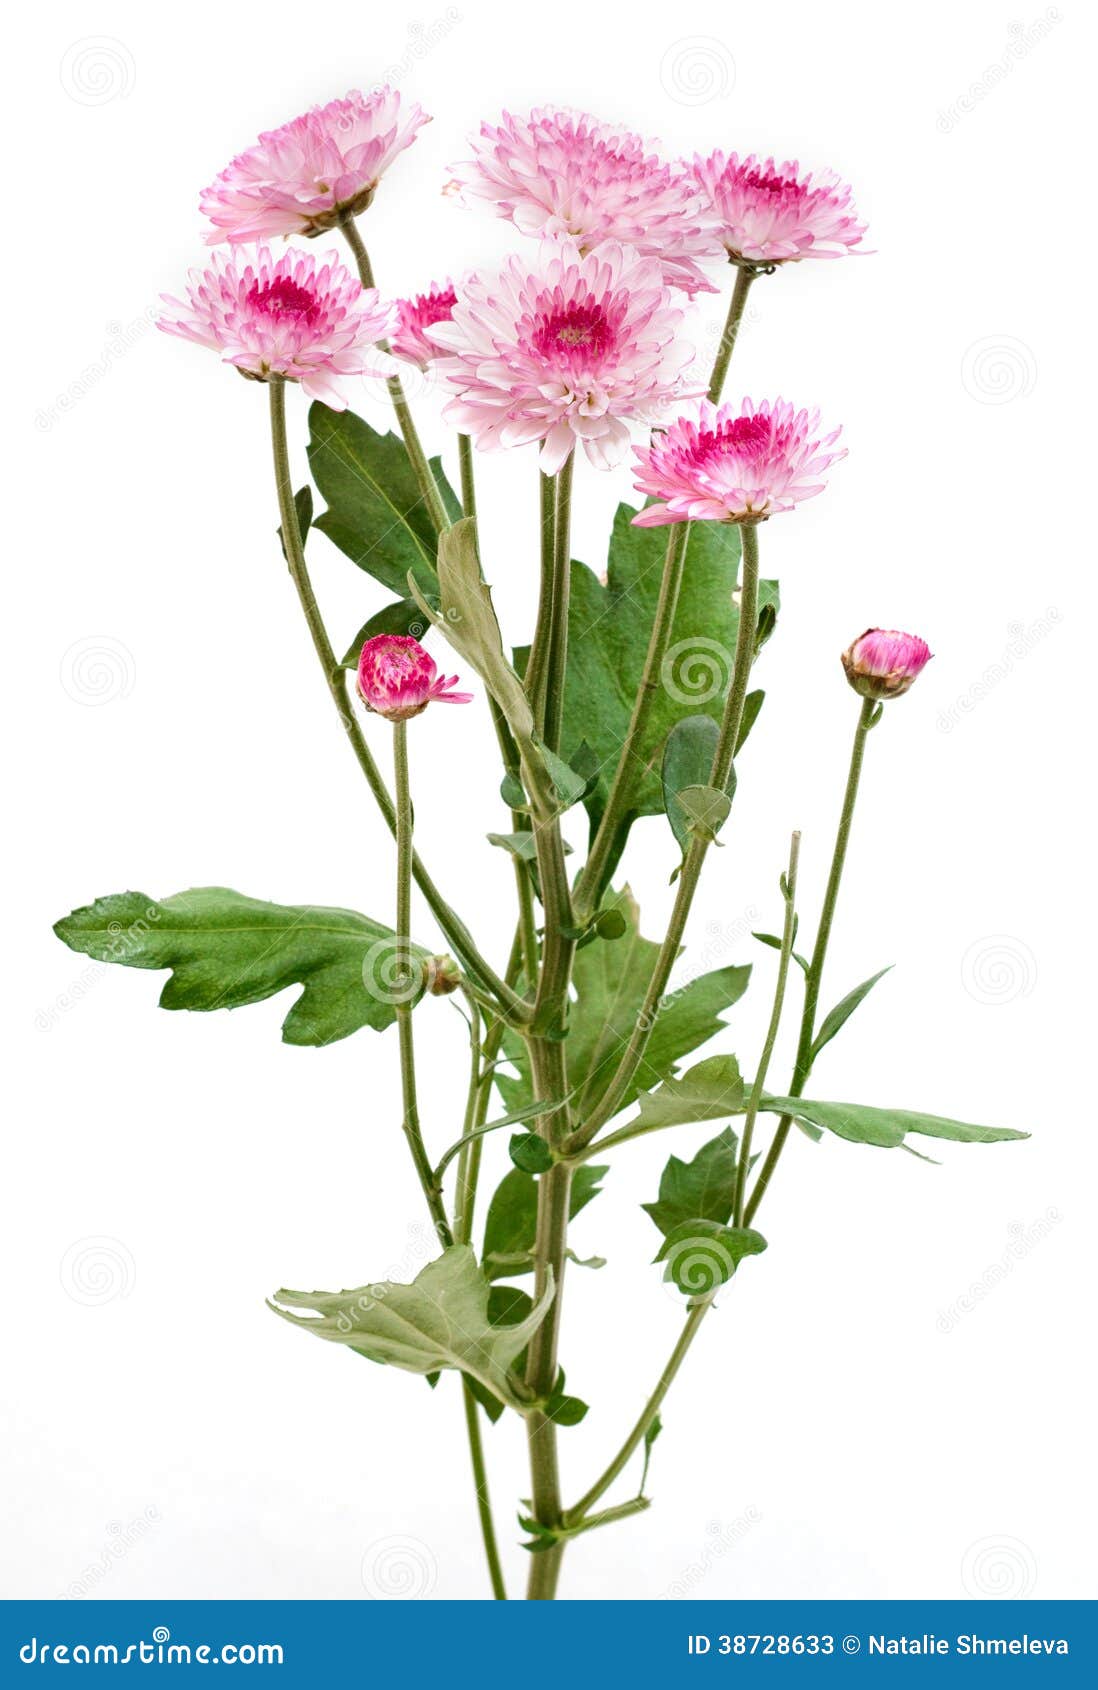 Flower stock image. Image of beautiful, gift, plant, celebrating - 38728633